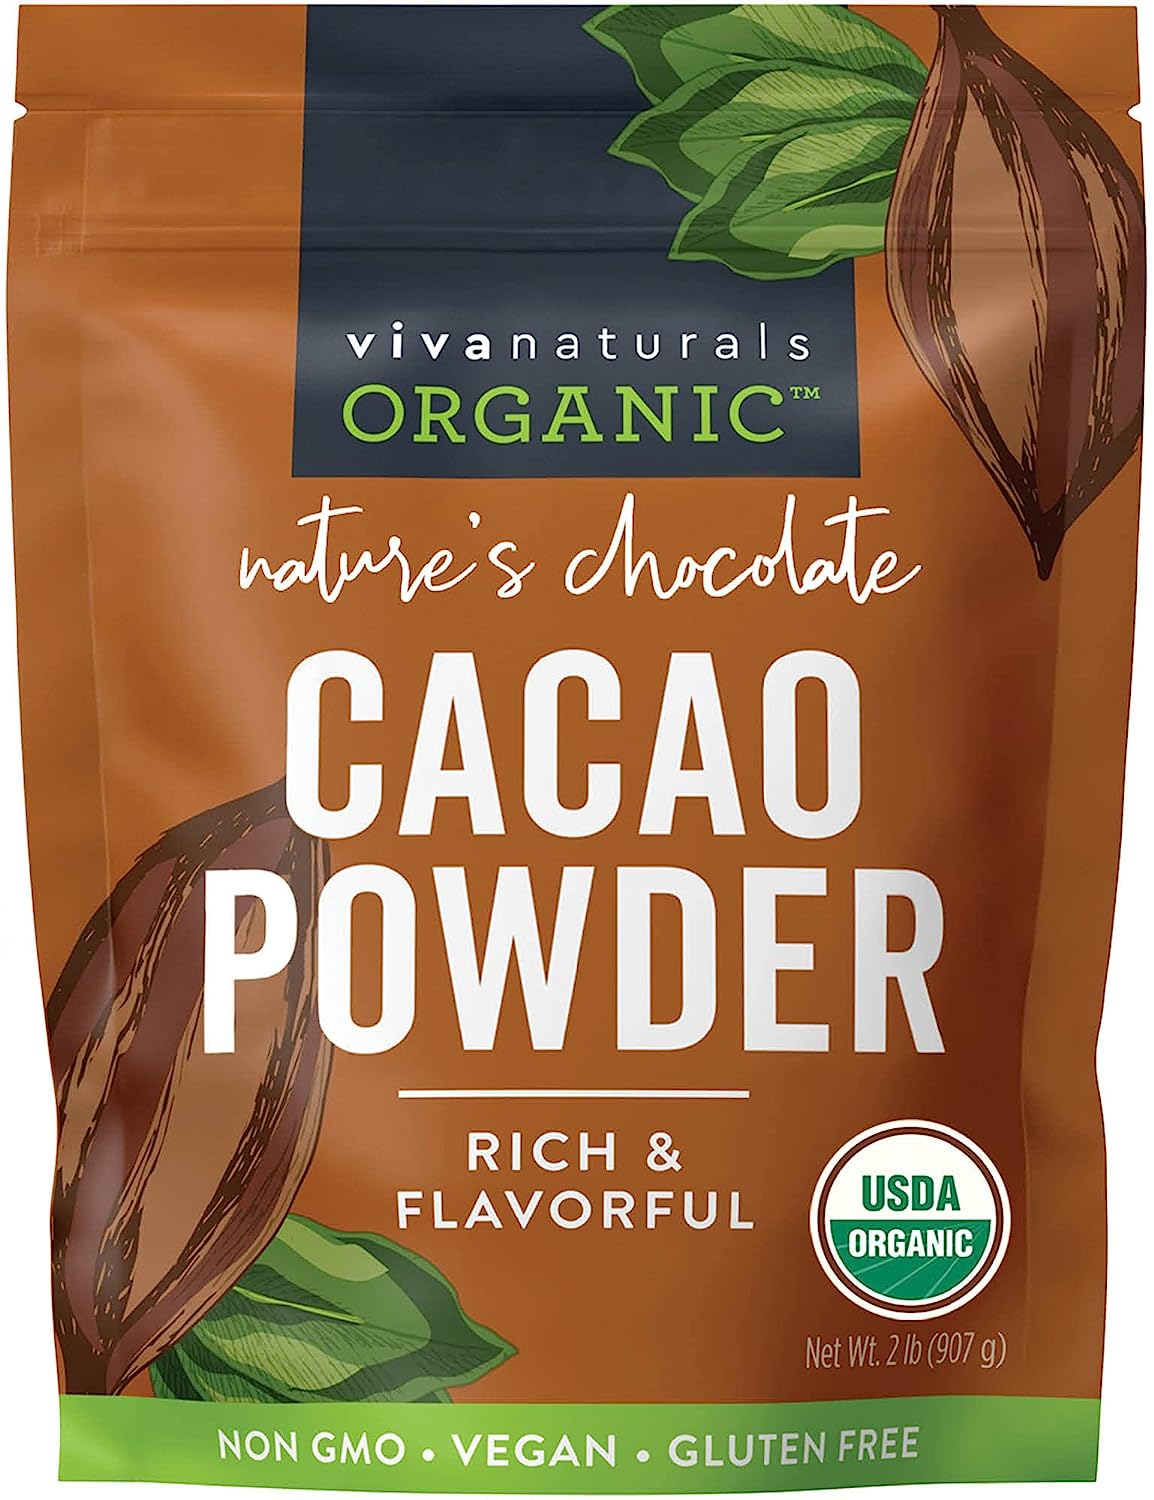 The Cocoa Trader Dutch Processed Black Cocoa Powder (1Lb)